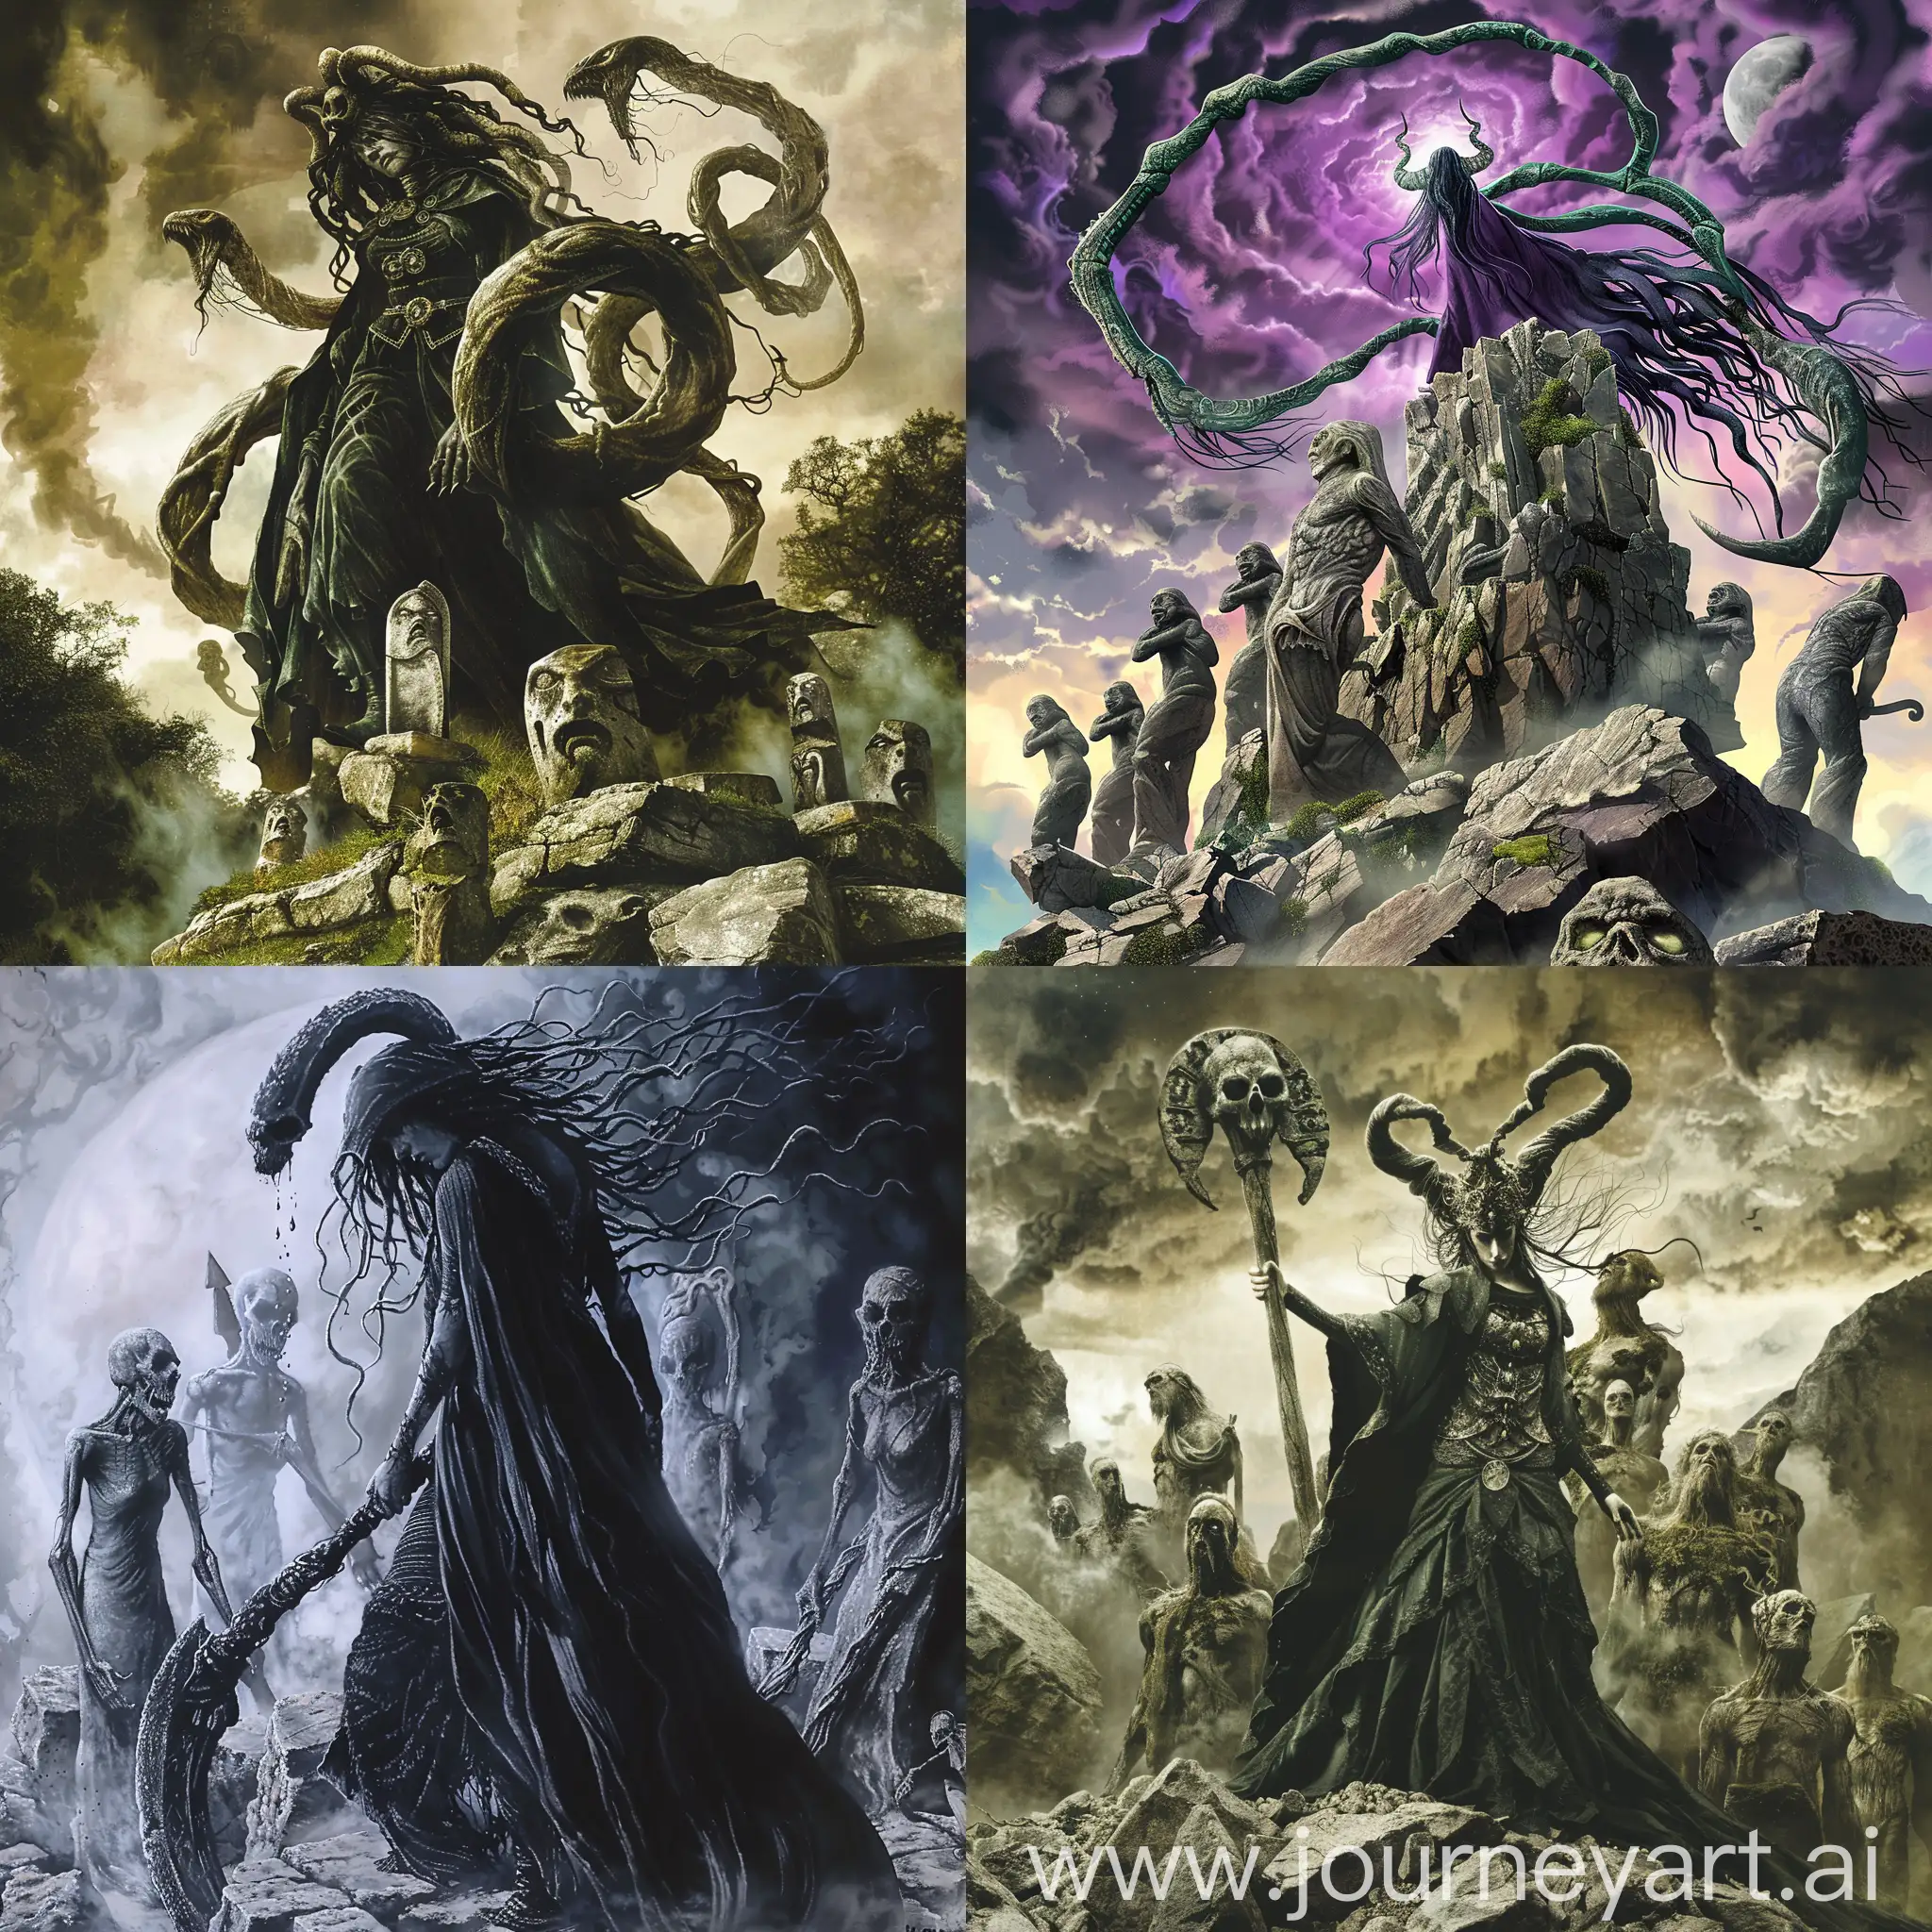 Medusa-Reaper-Over-Stone-Men-Artwork-Mythical-Figure-in-Haunting-Scene